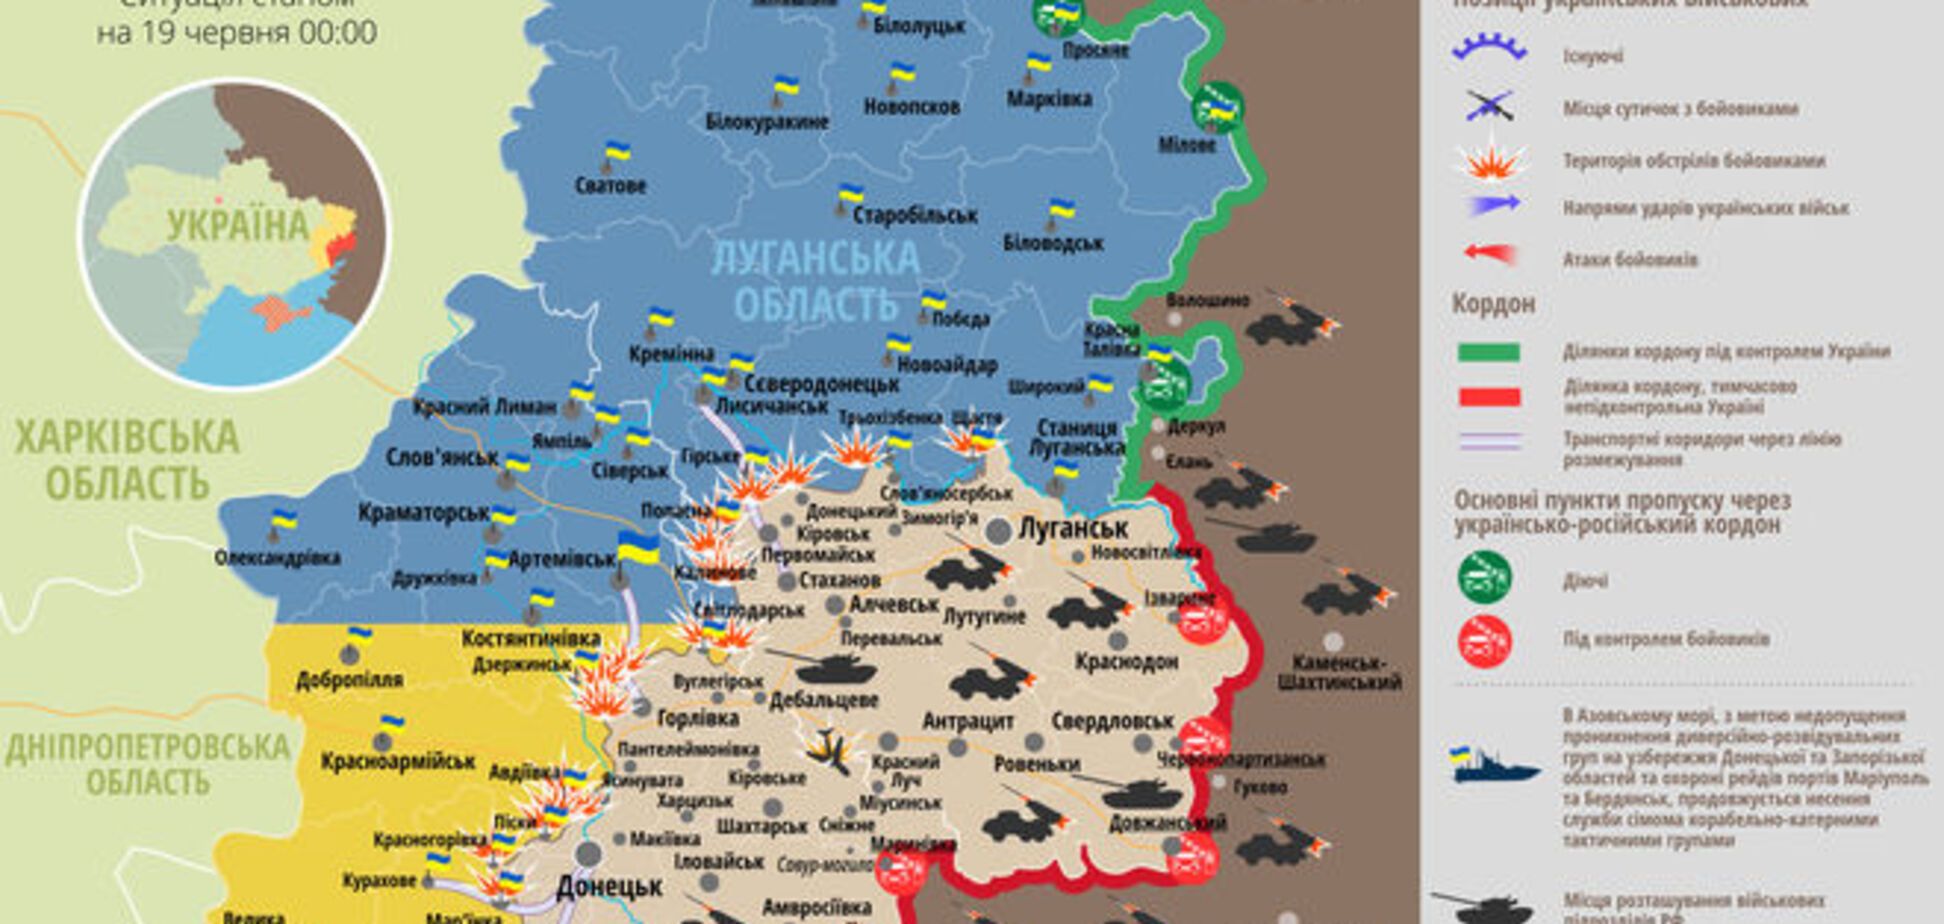 Террористы активизировались на Донецком направлении: карта АТО